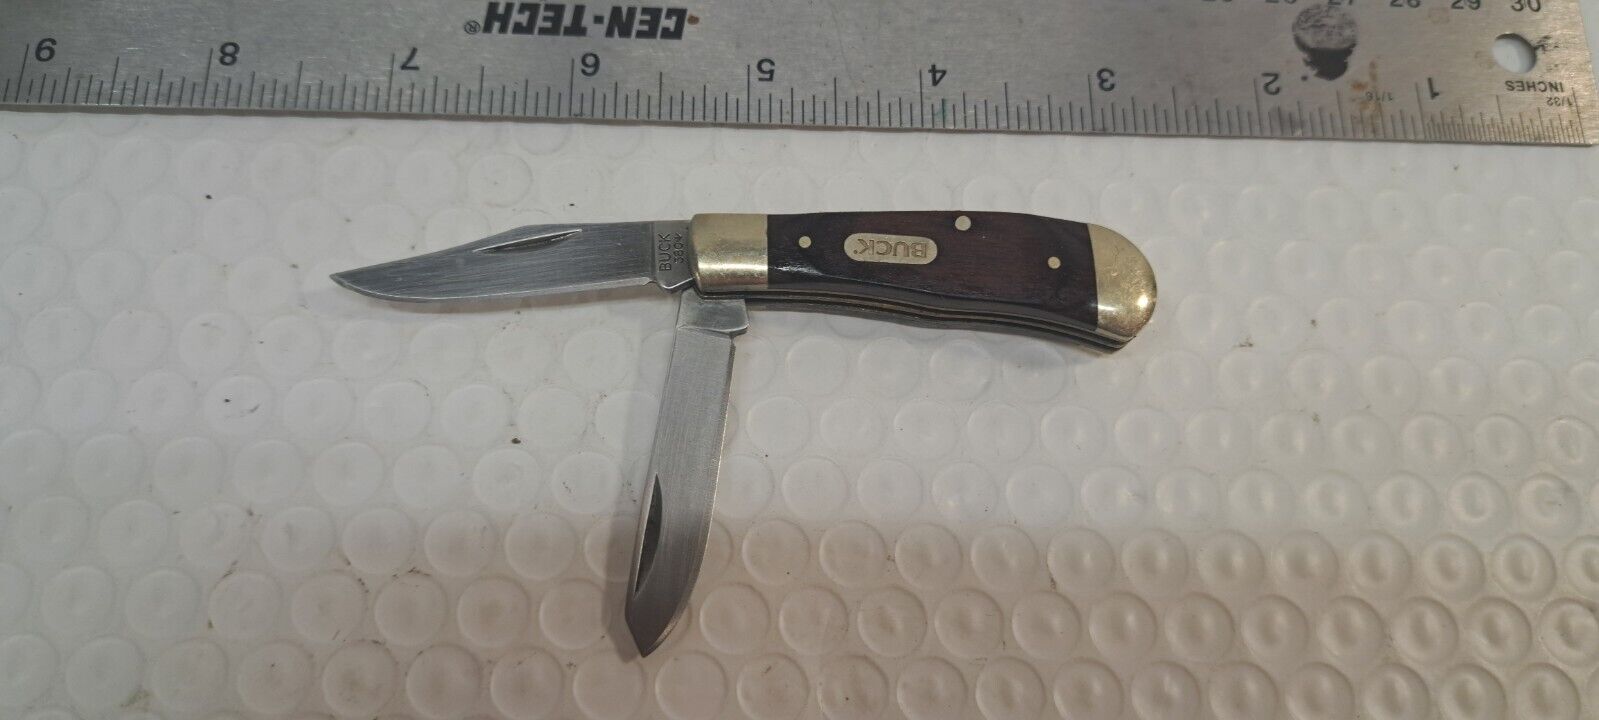 Vintage Buck Knife, Pocket Knife 2 Blade 380-1 Wood Handle Mini